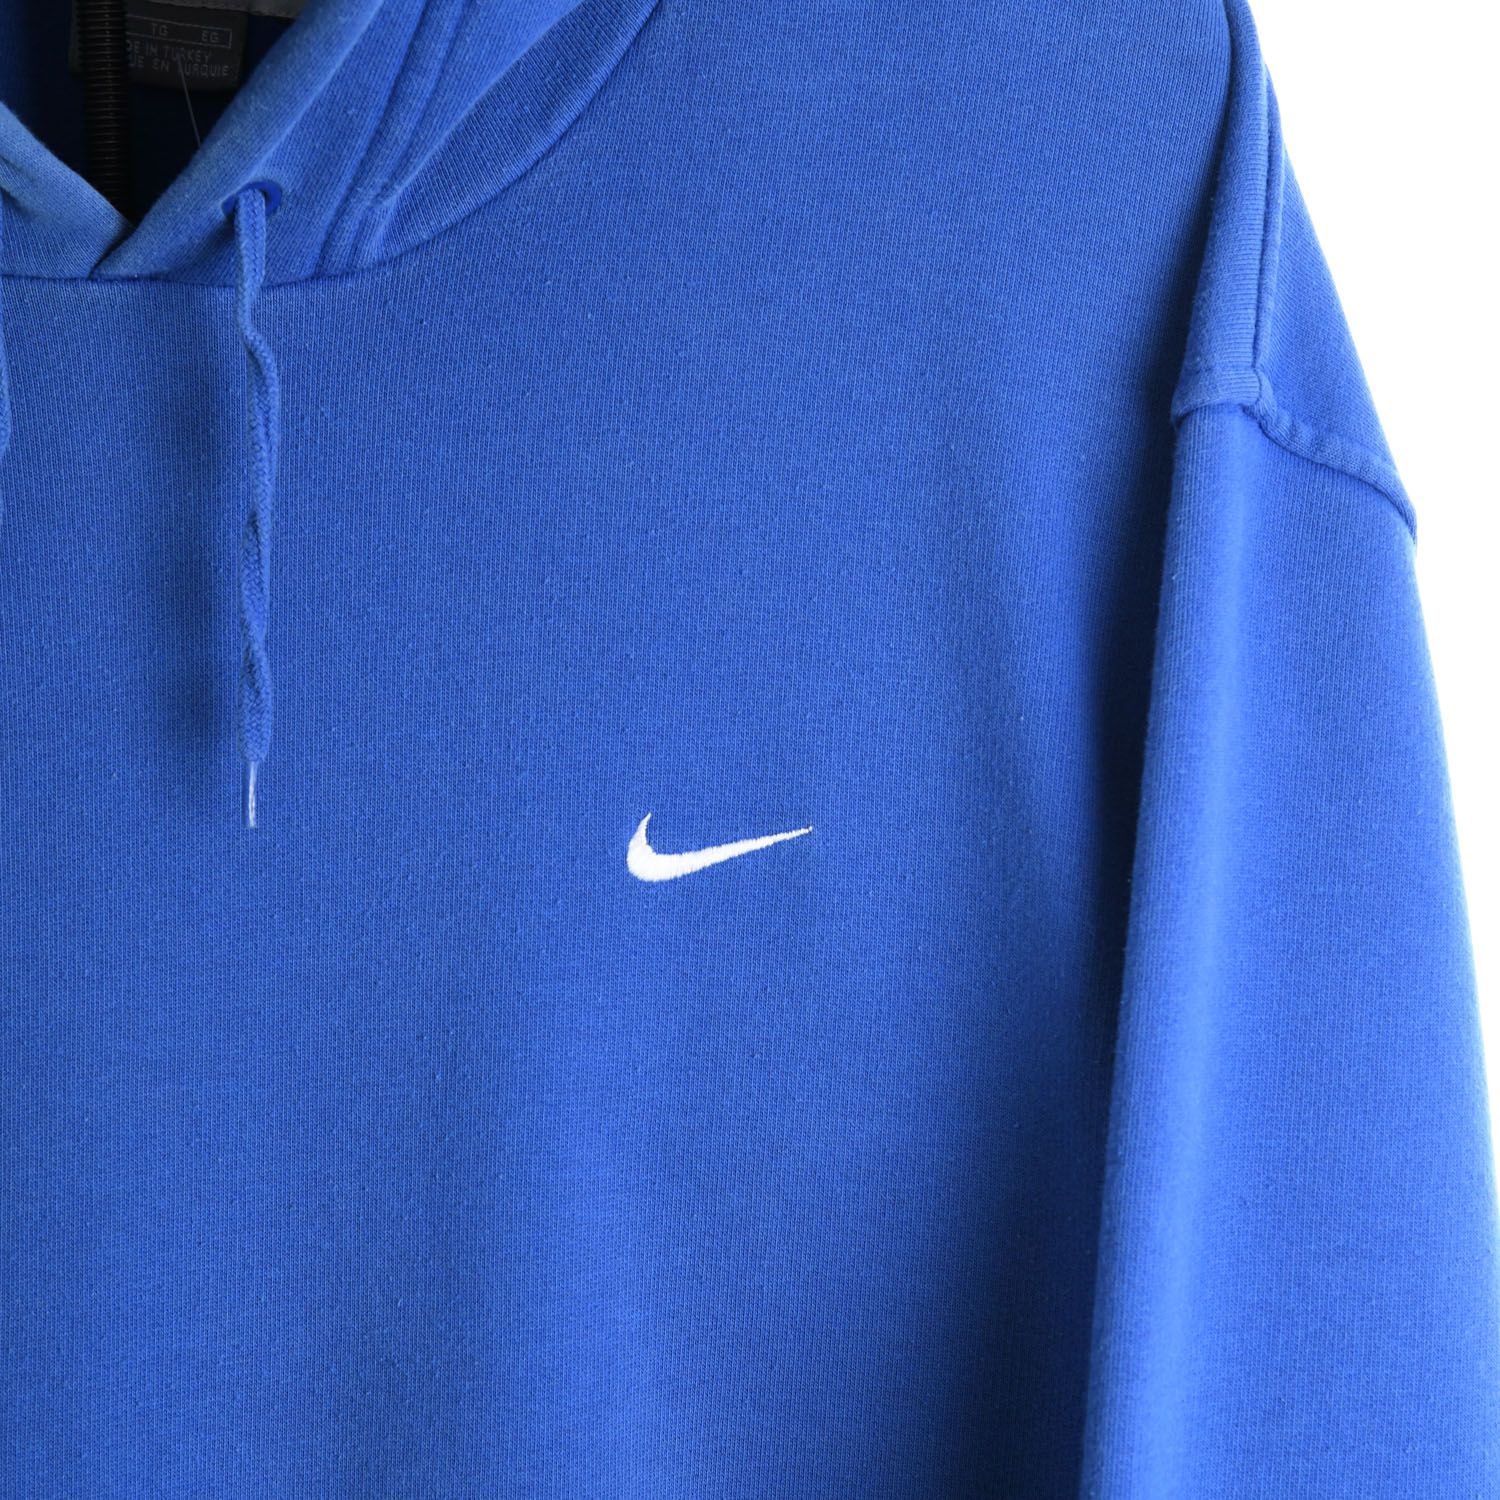 Nike Early 2000s Blue Hoodie